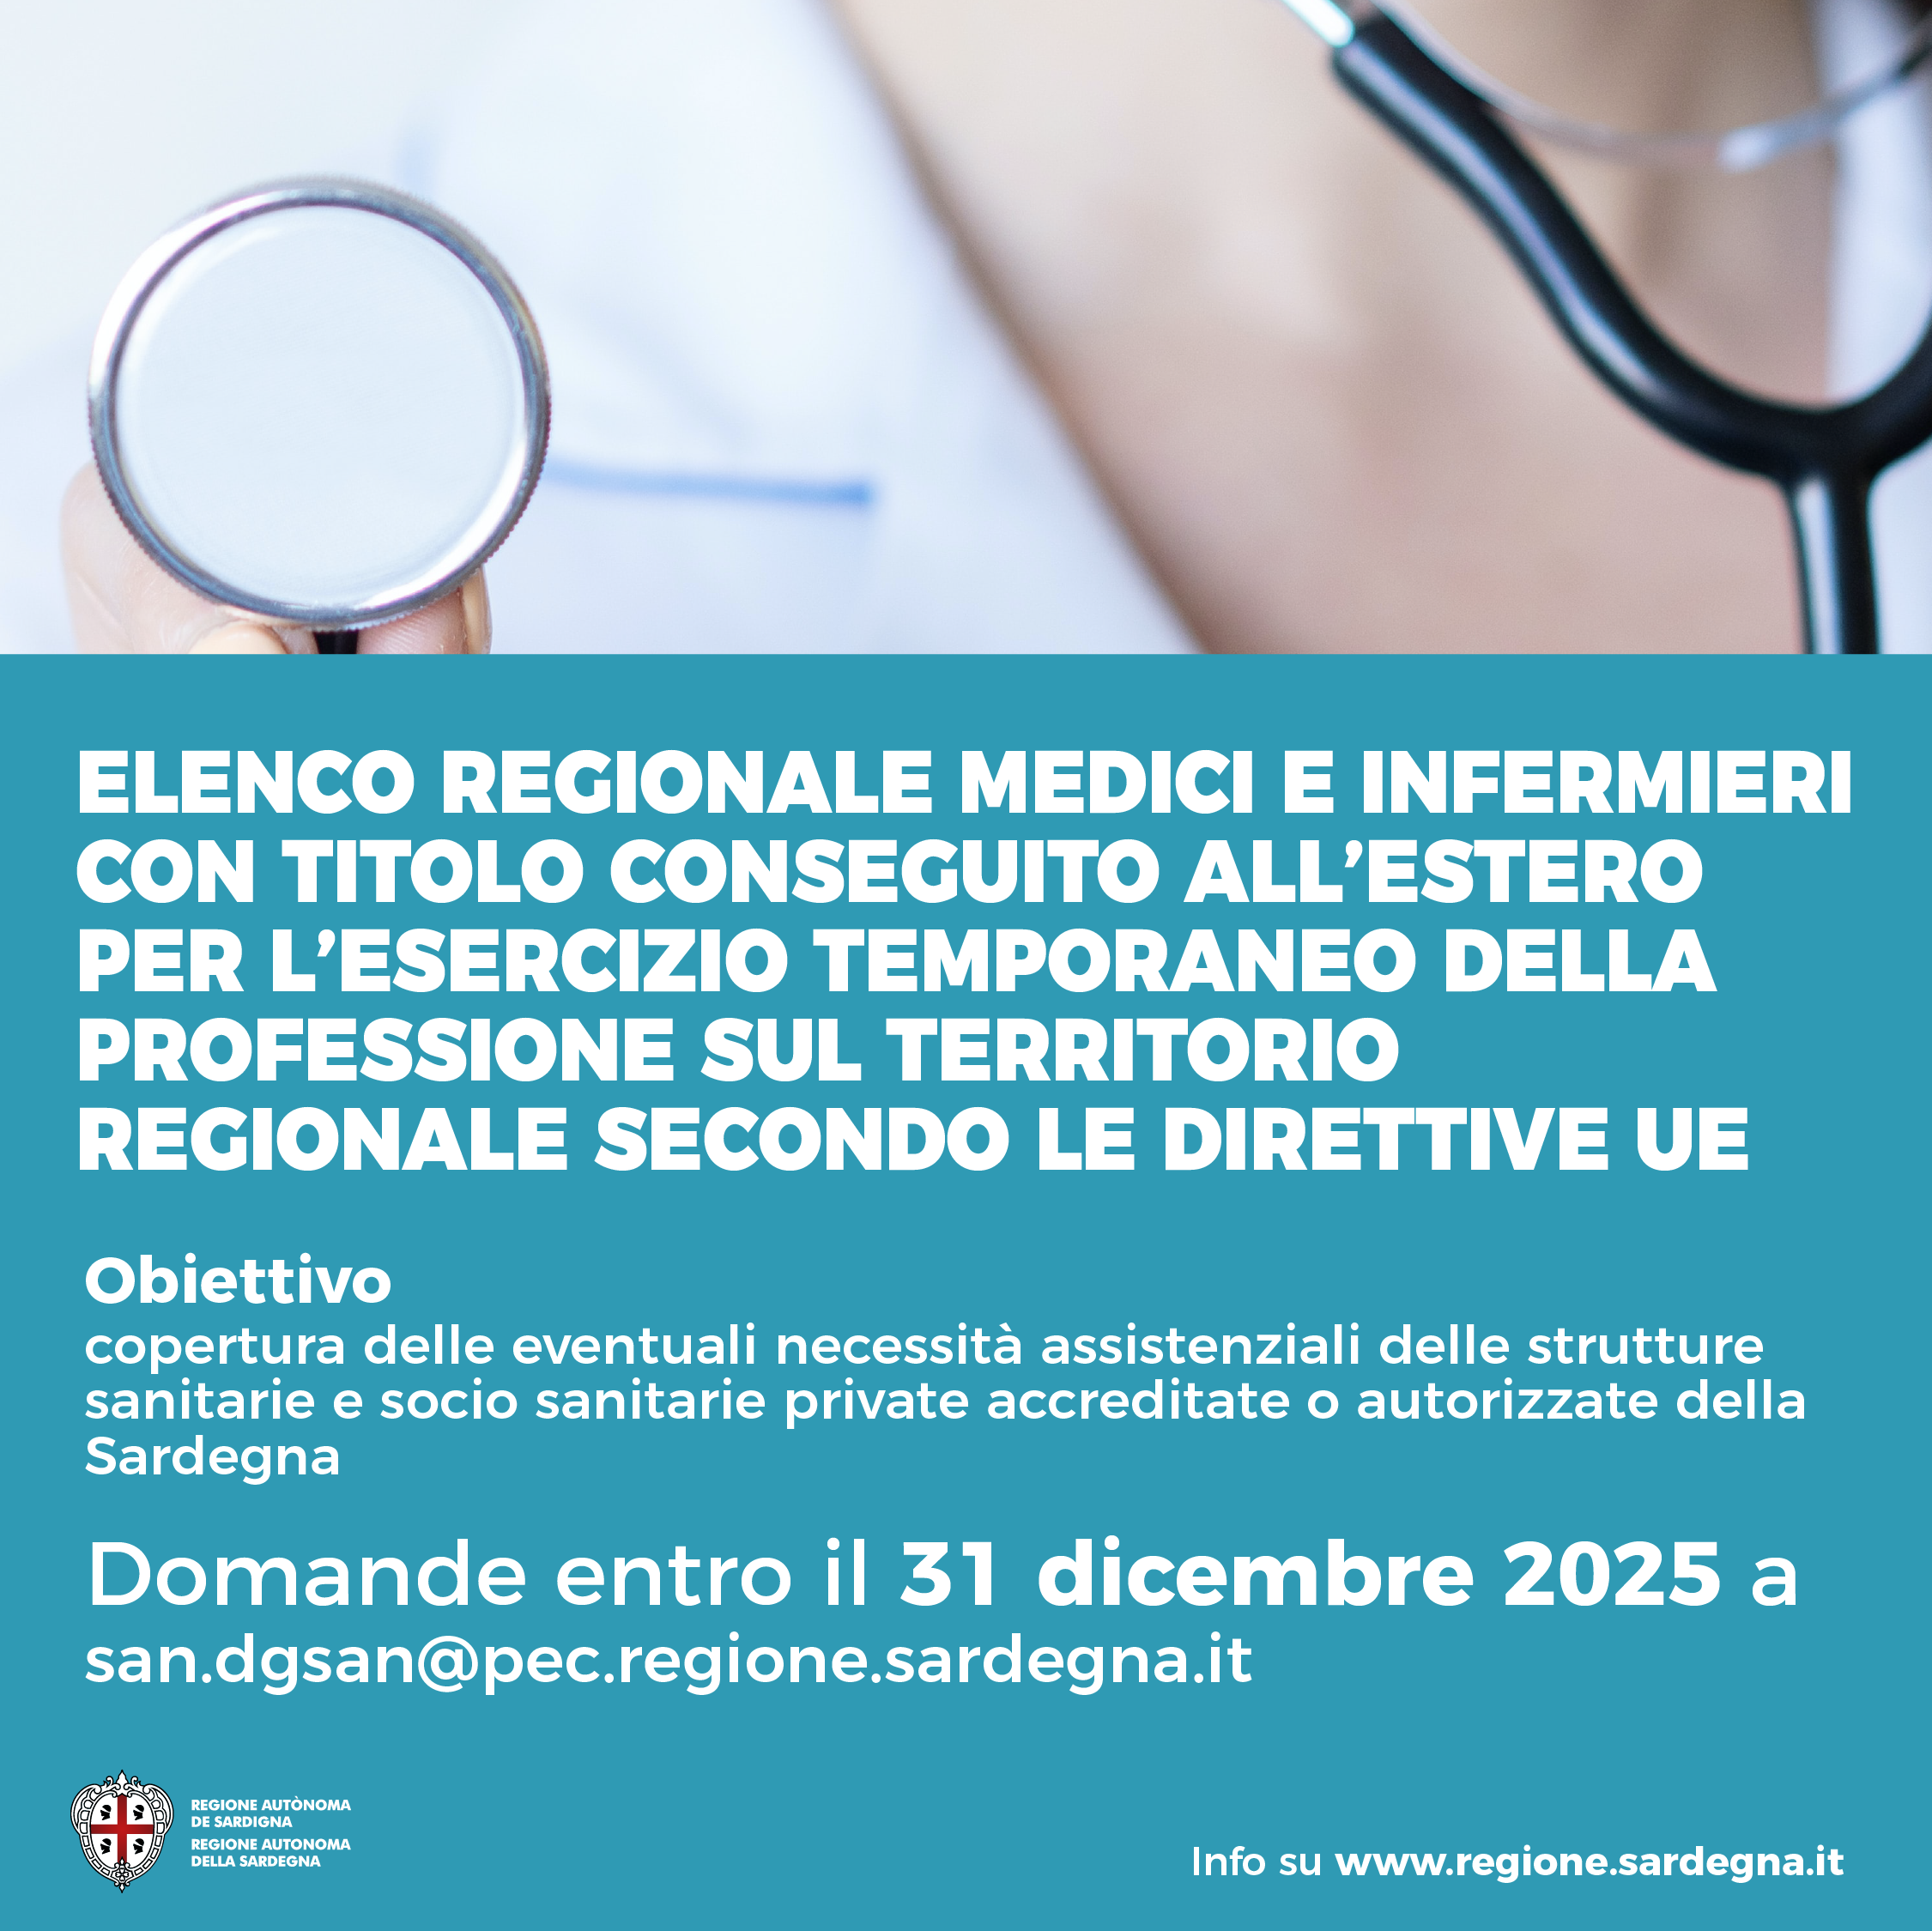 Elenco regionale medici chirurghi e infermieri per esercizio temporaneo professione con direttive UE